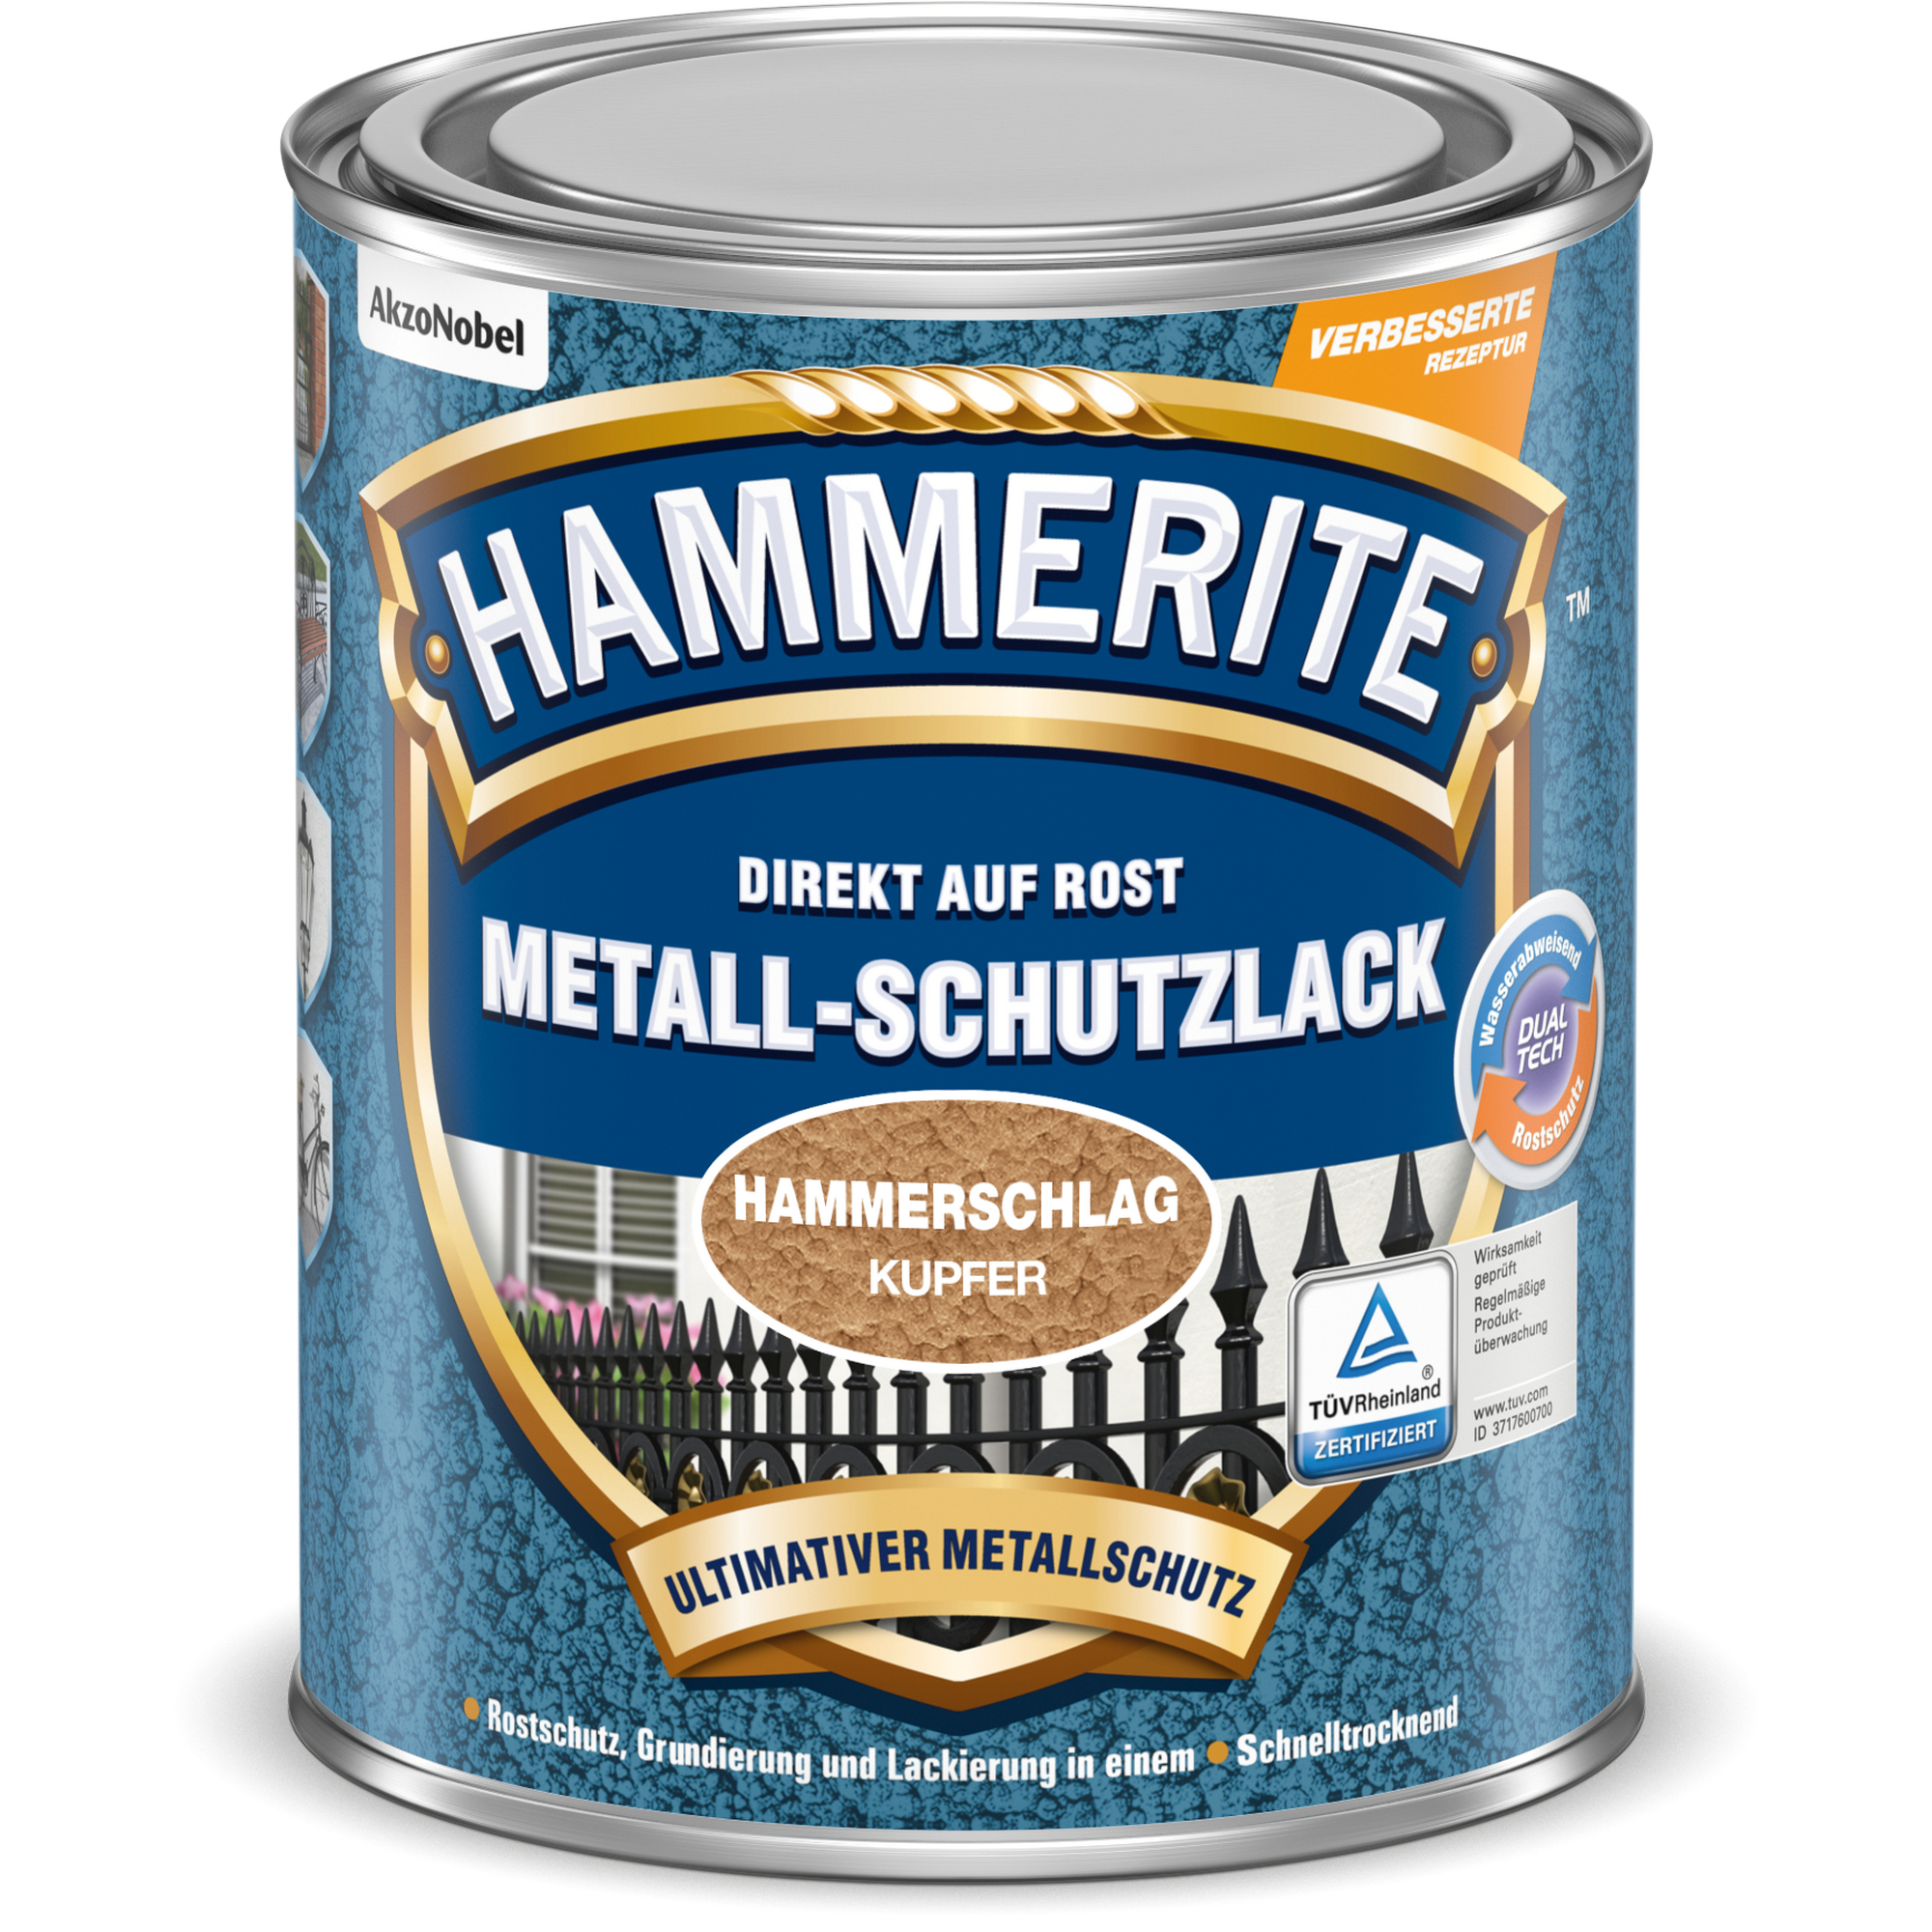 Metallschutzlack Hammerschlag-Effekt kupferfarben 250 ml + product picture